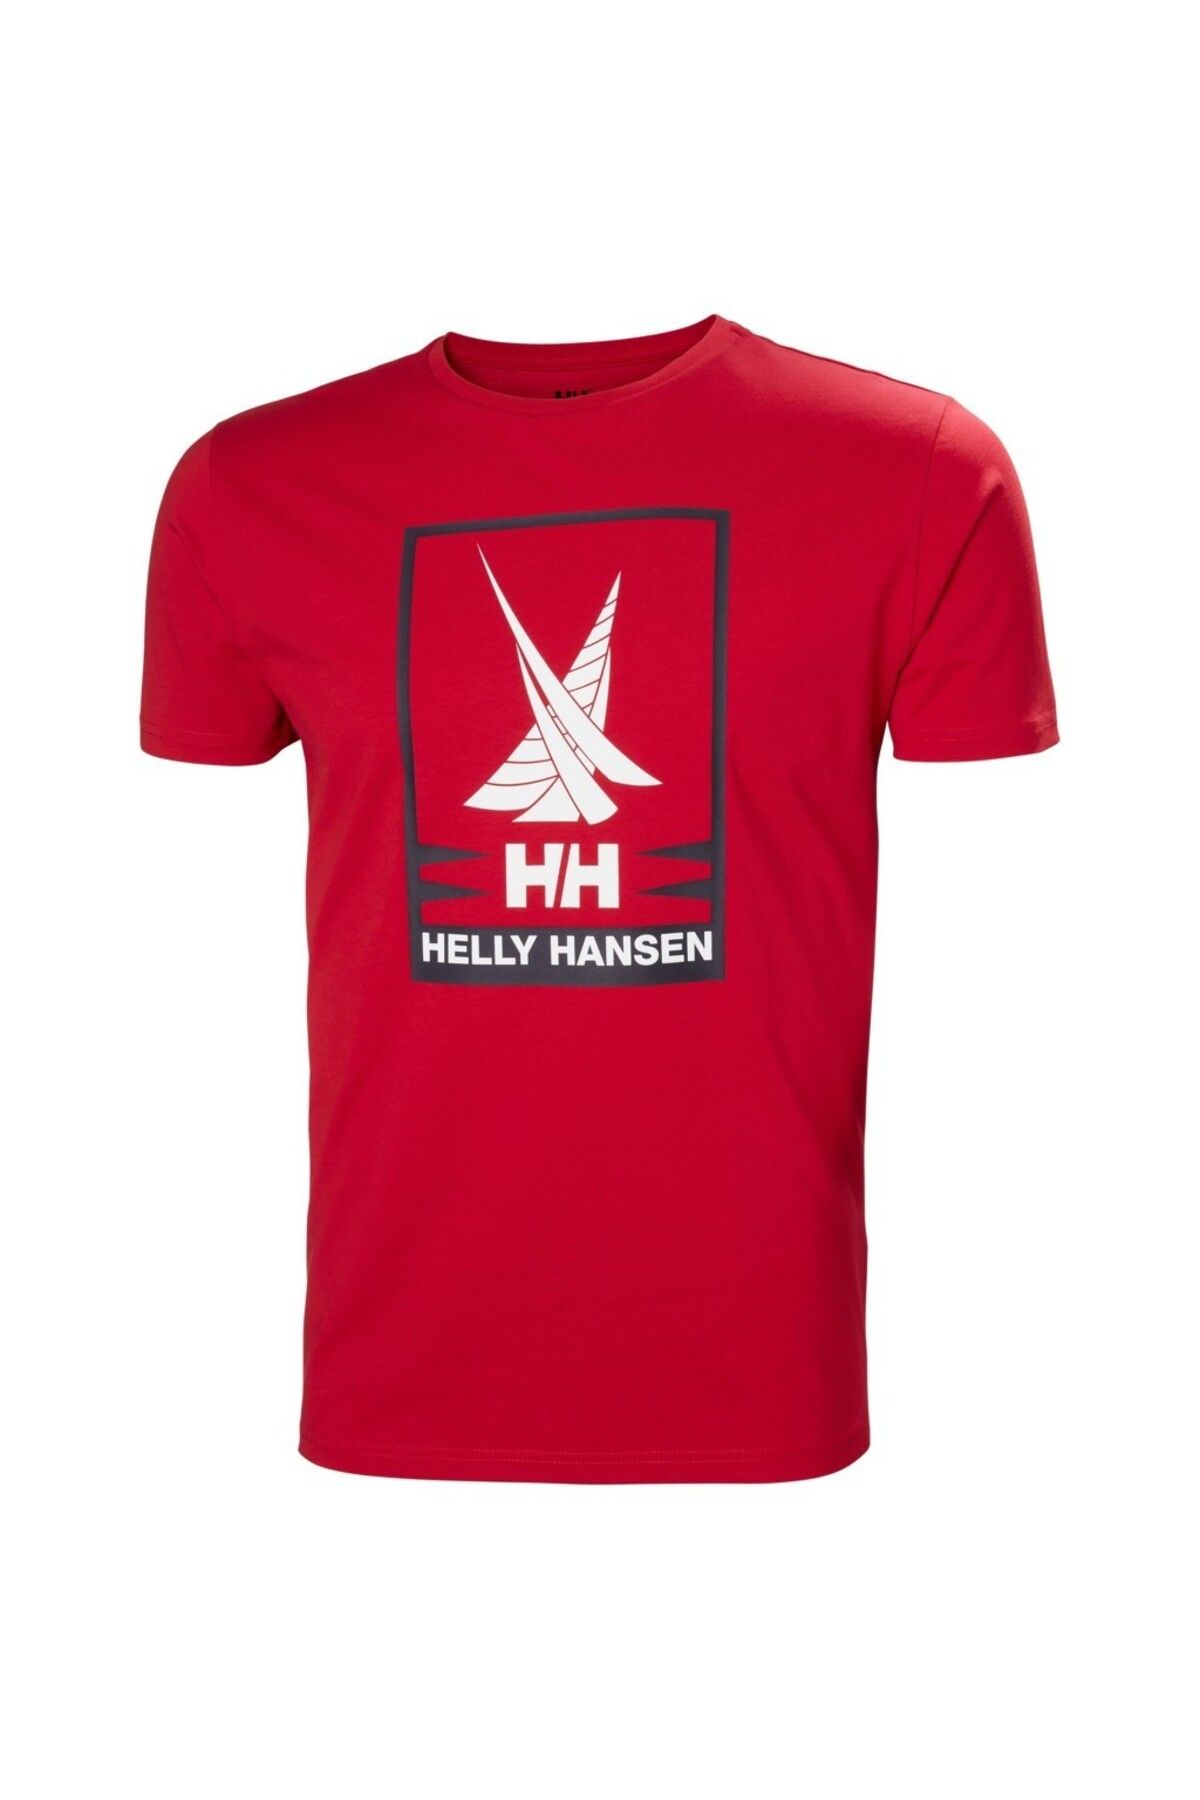 Helly Hansen Shoreline 2.0 Erkek Kırmızı Yuvarlak Yaka Tişört